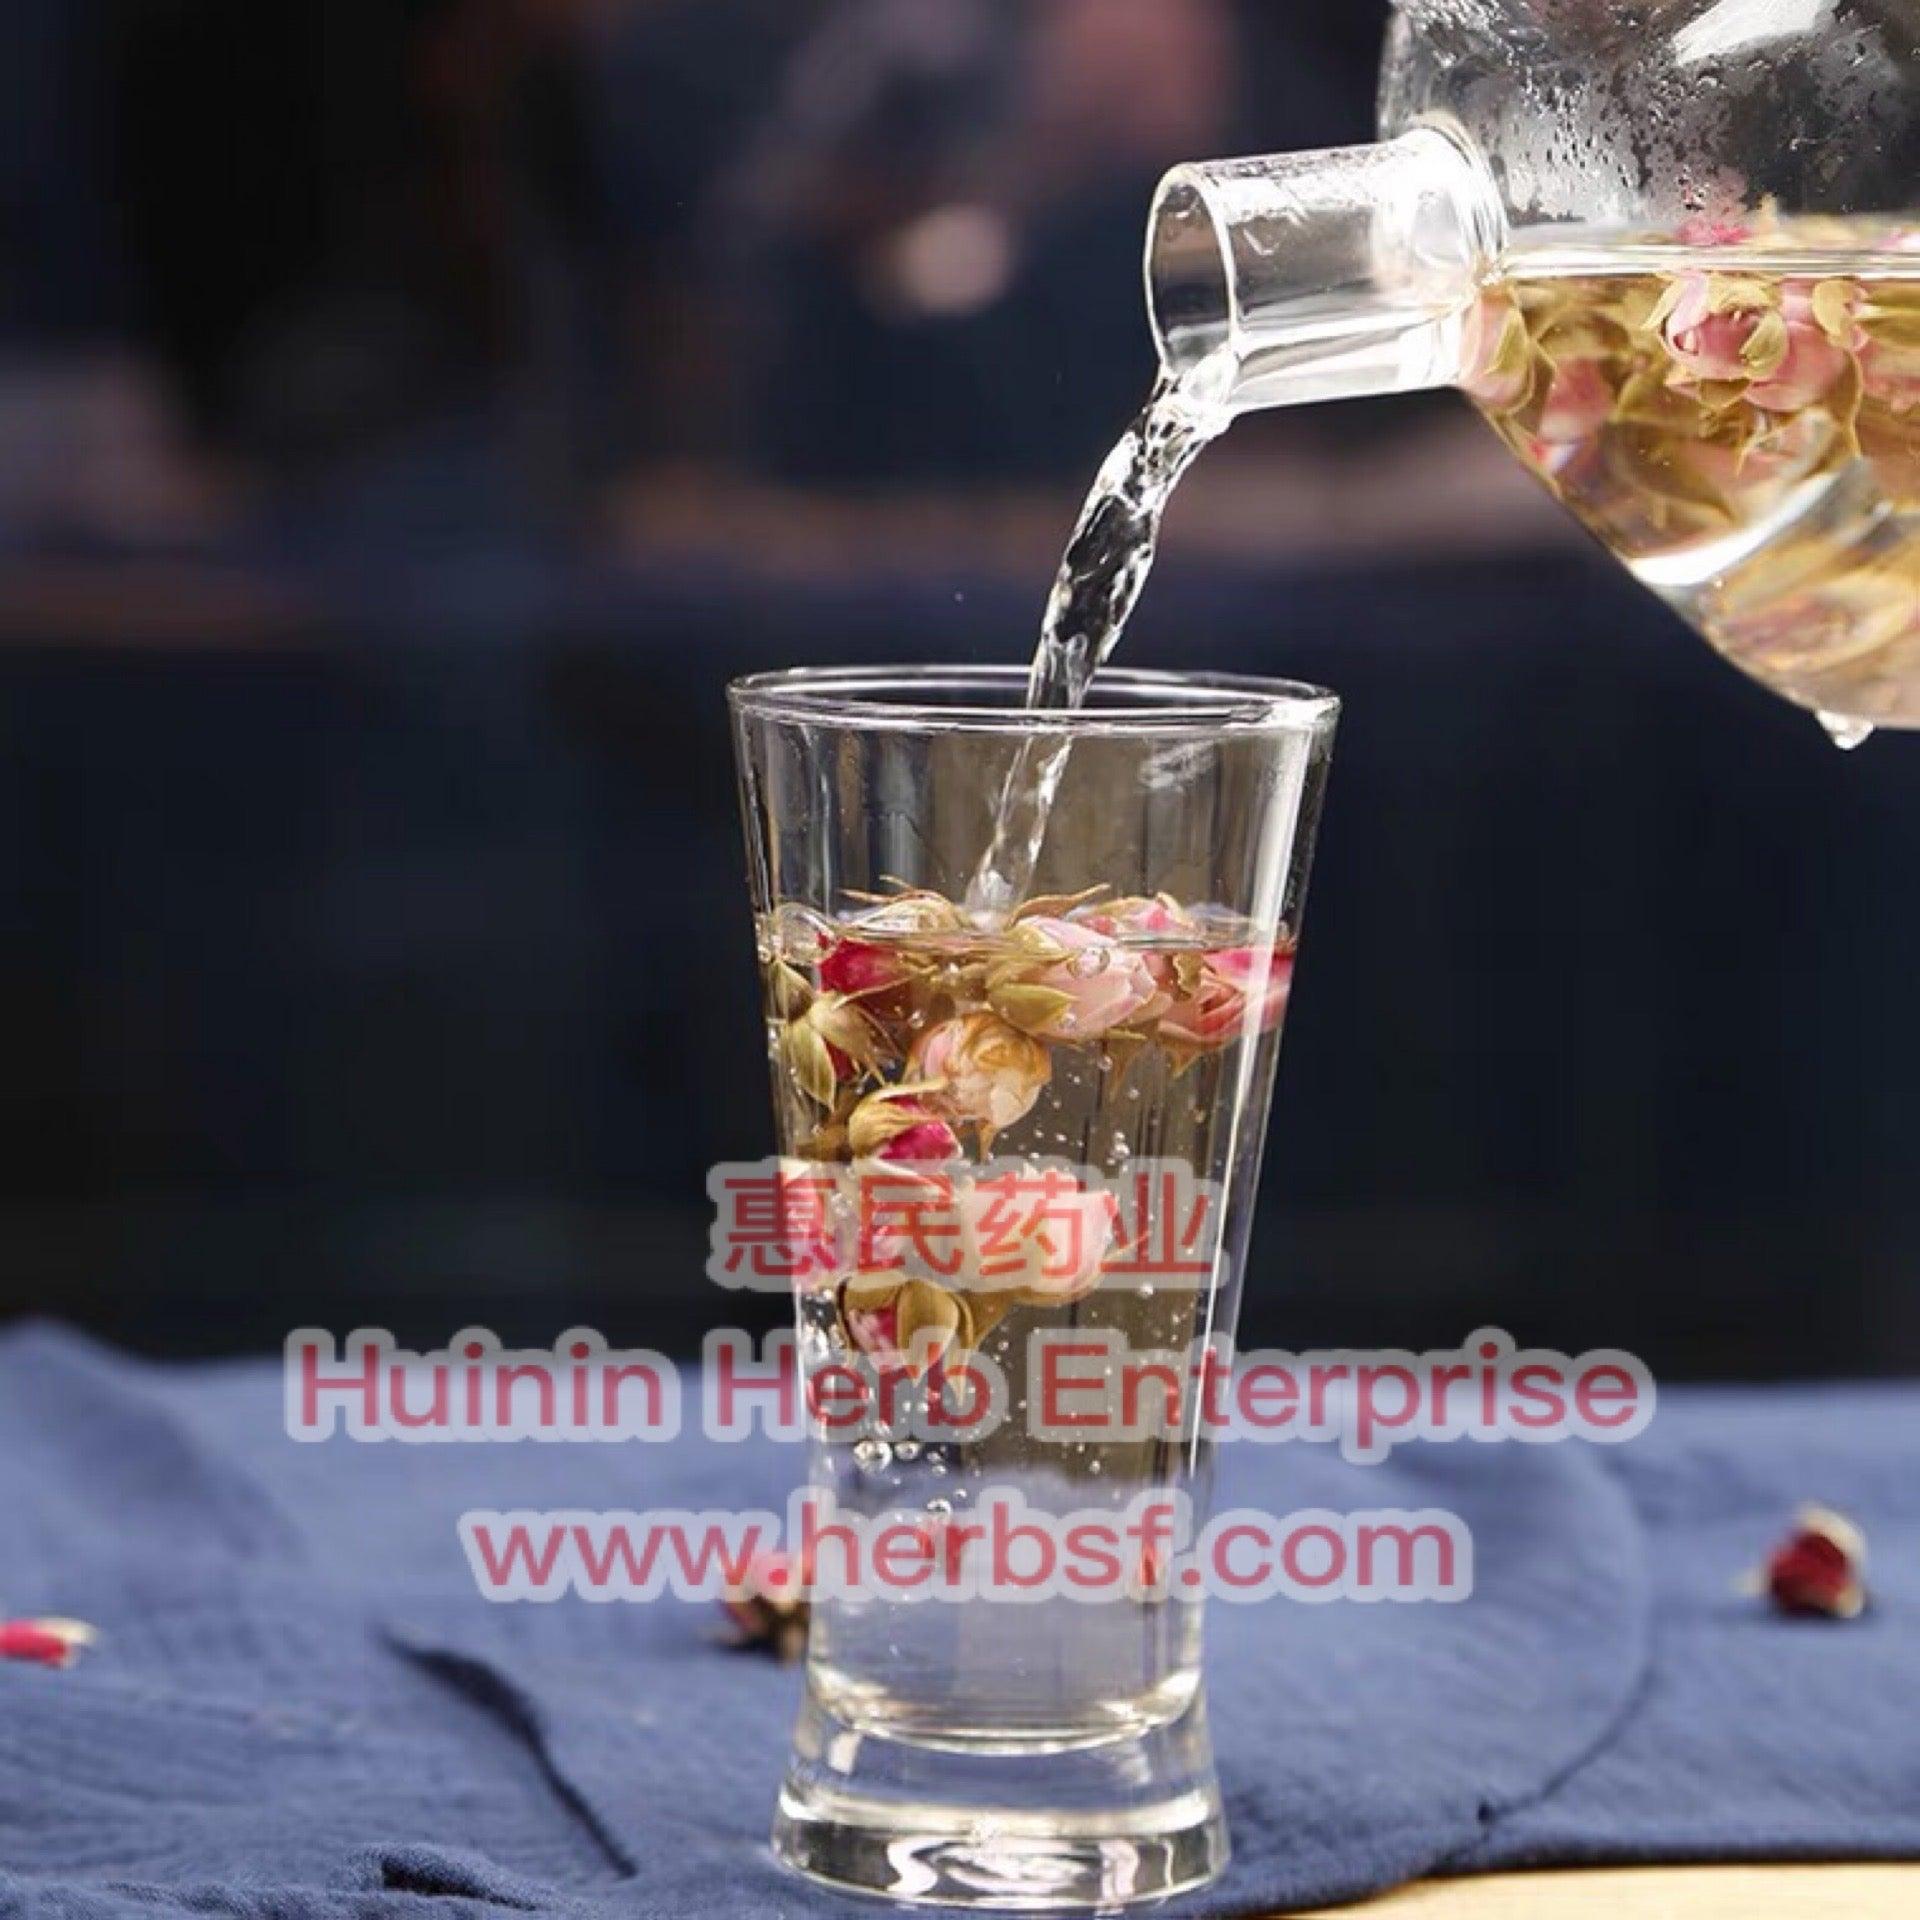 Mei Gui (Rose) - Huimin Herb Online, LLC